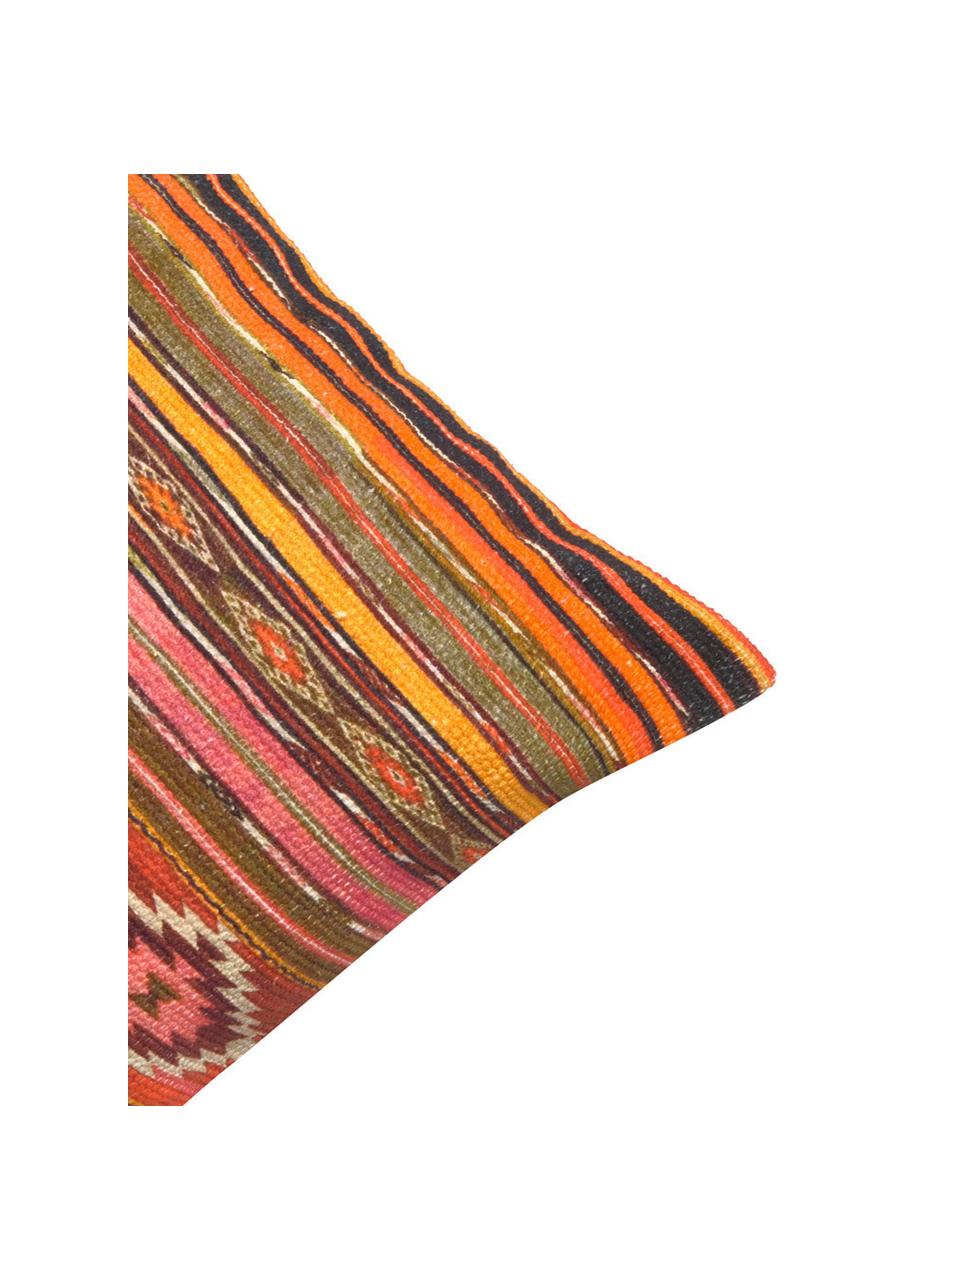 Federa arredo con fantasia etnica Kusa, 100% cotone, Multicolore, Larg. 45 x Lung. 45 cm